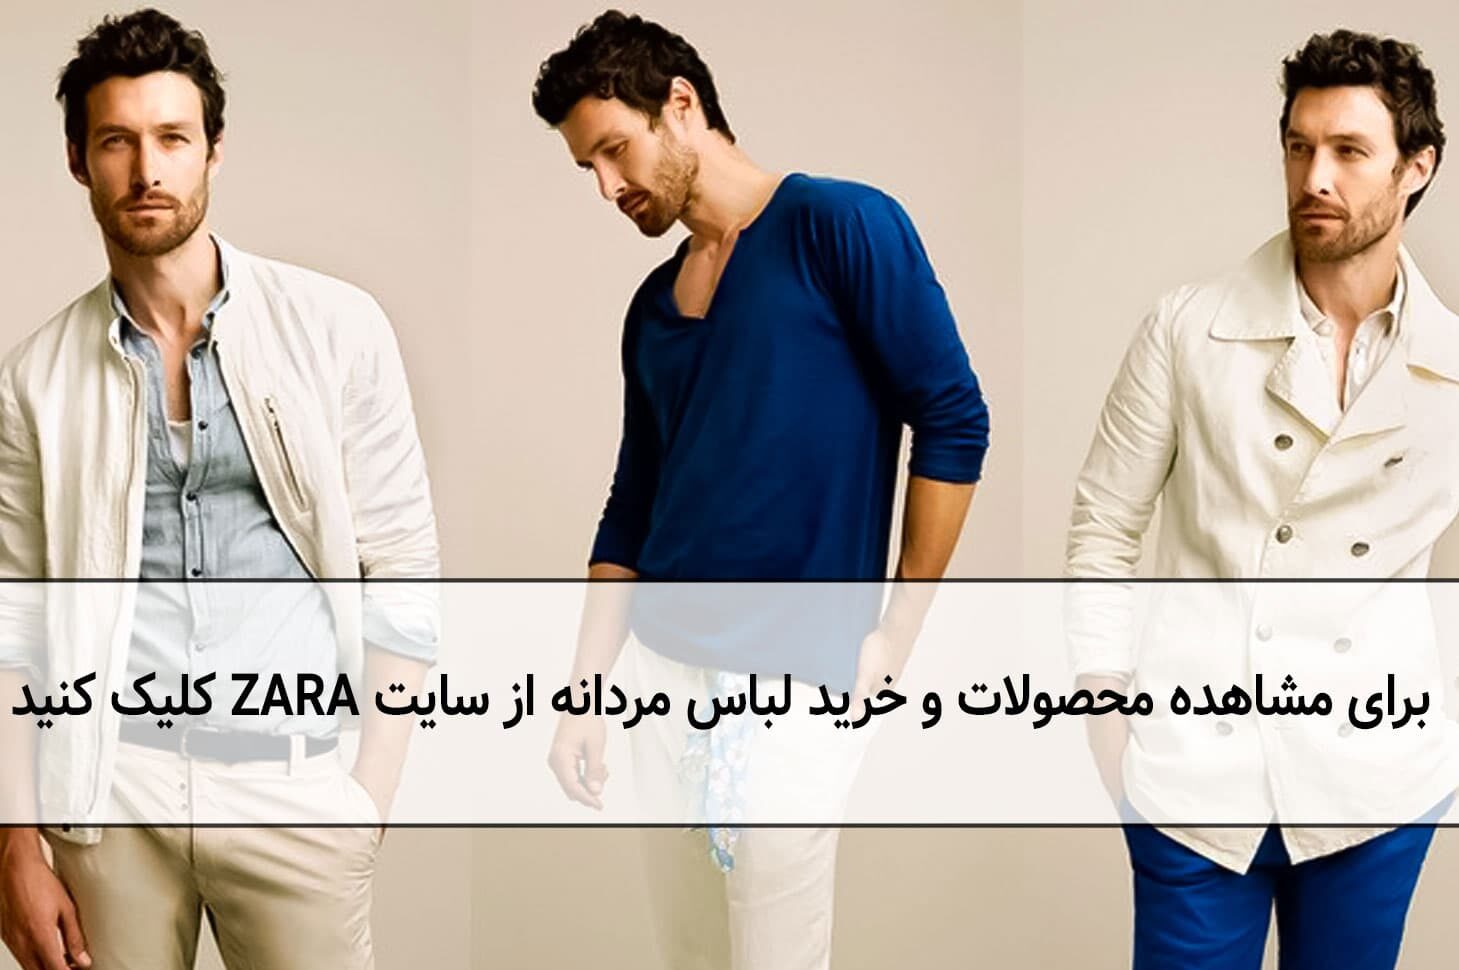  خرید لباس مردانه از سایت زارا ترکیه 